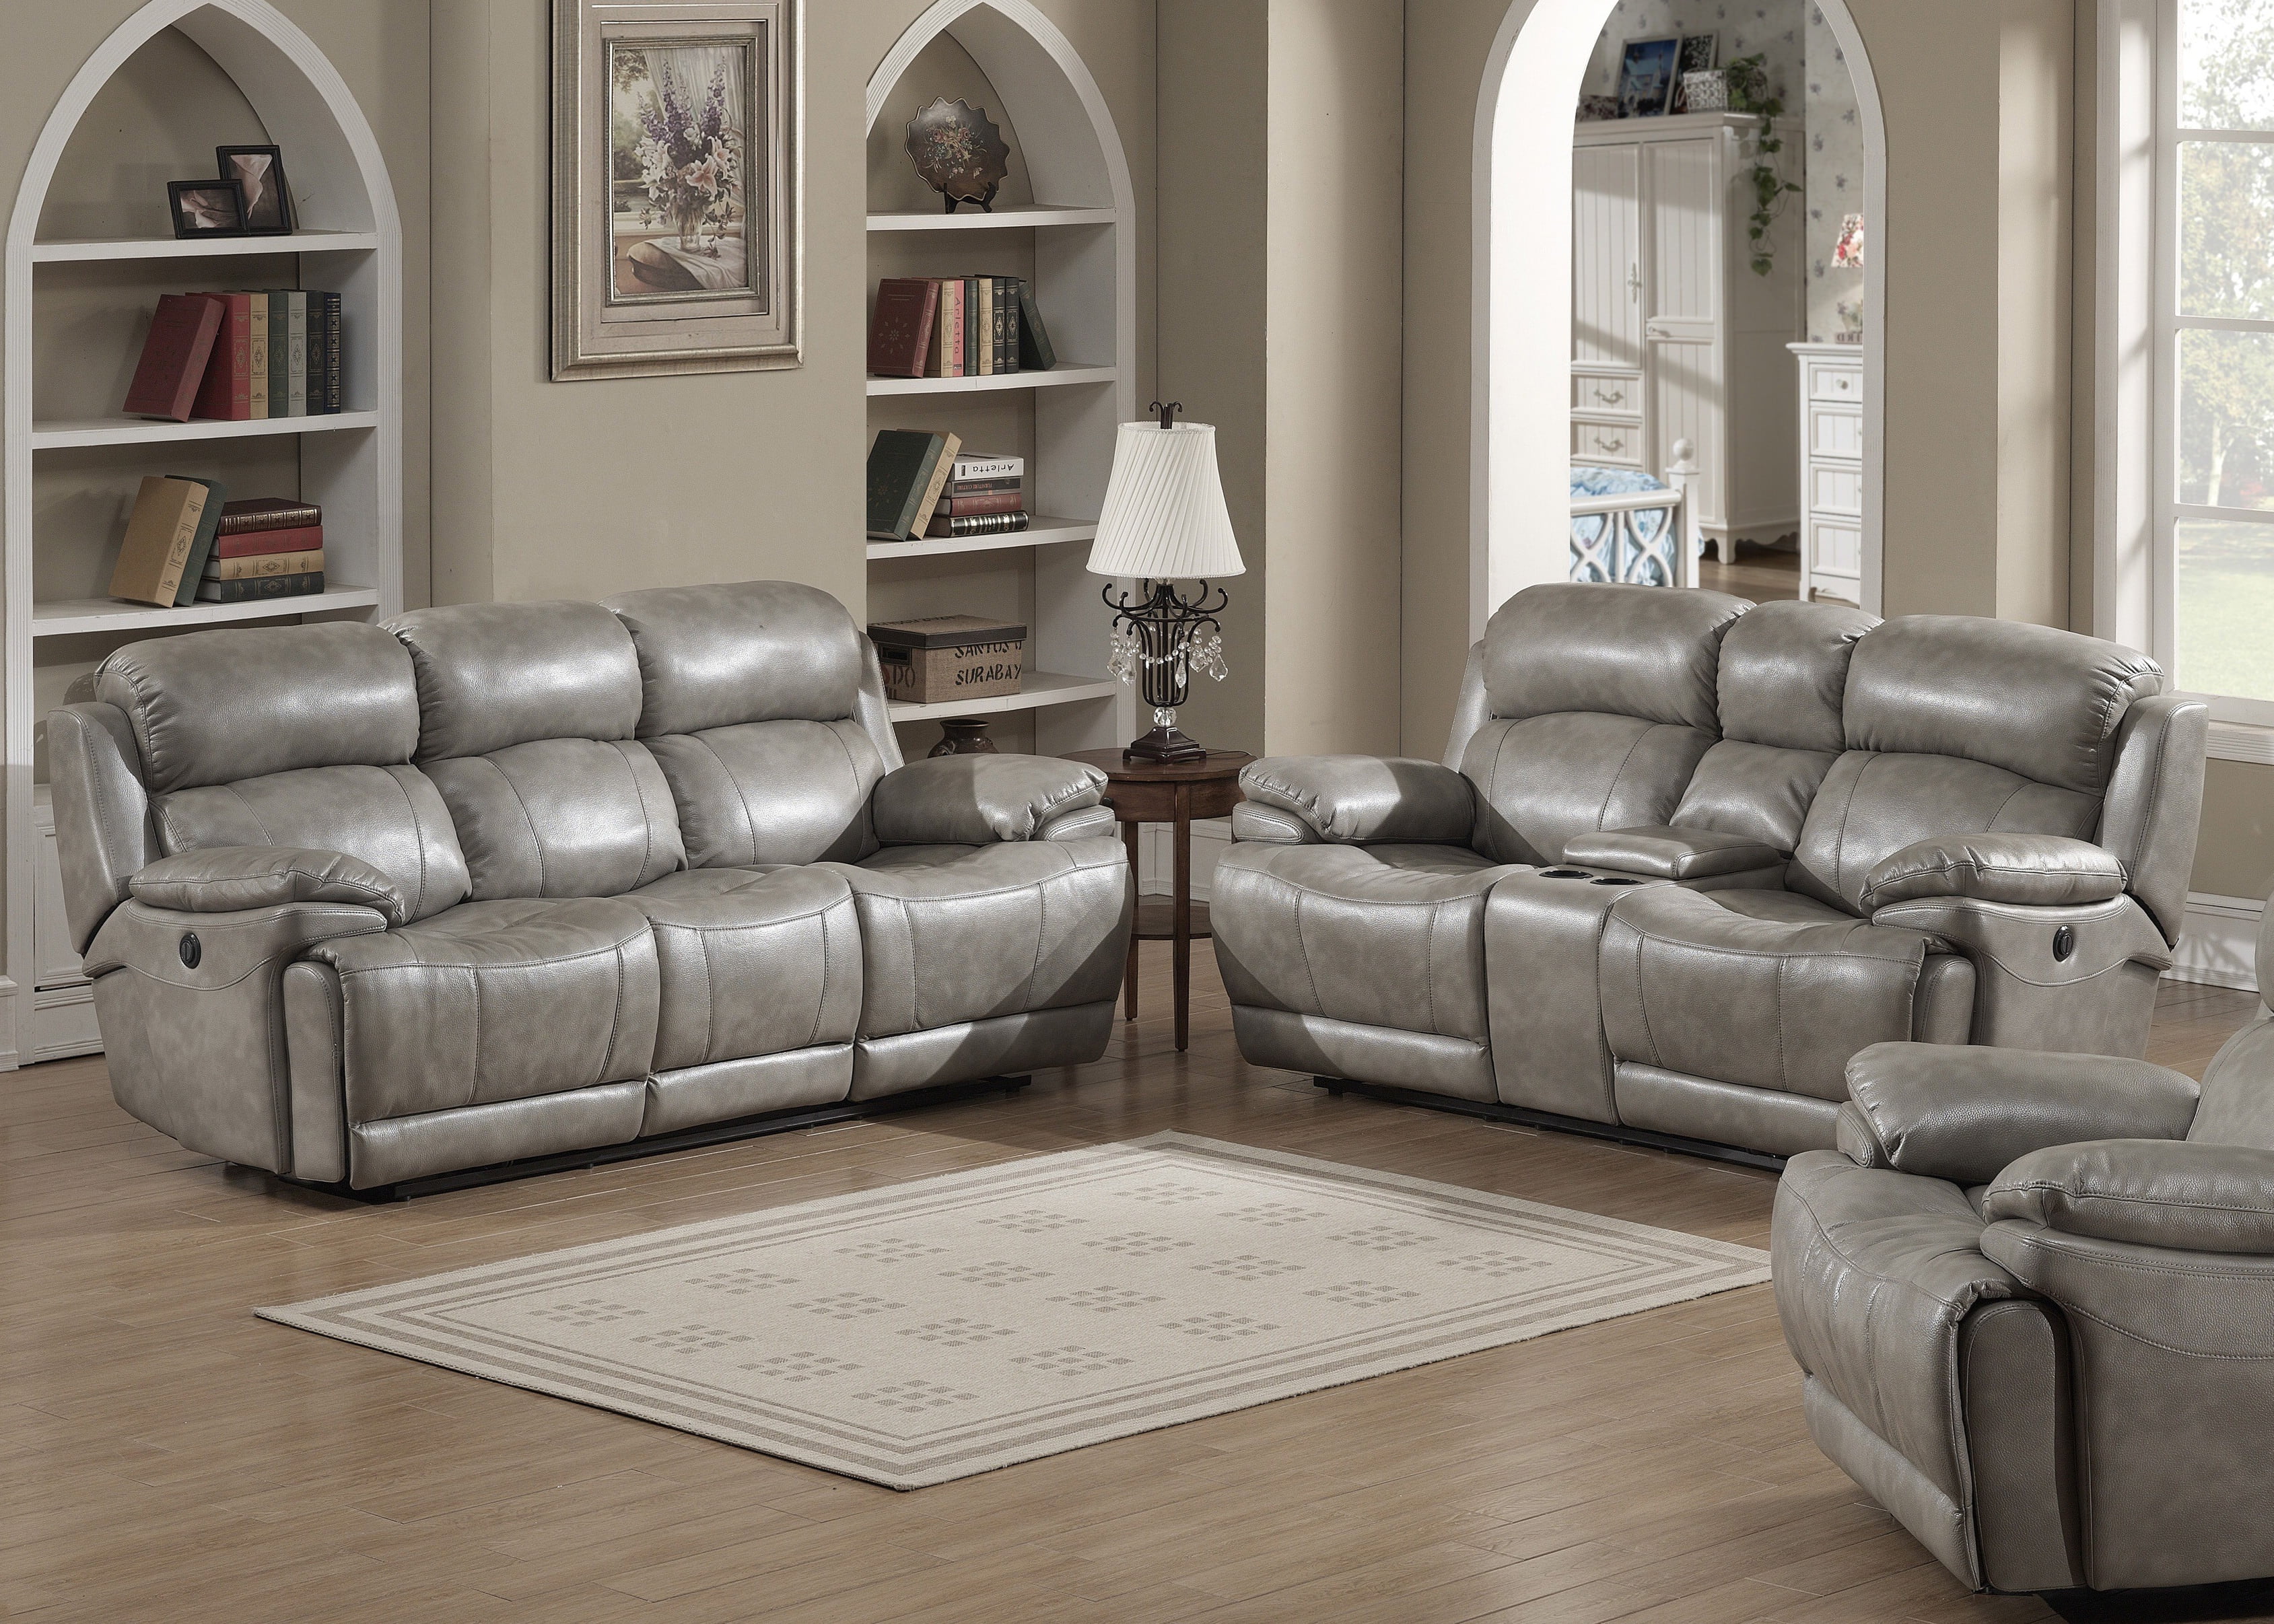 grey leather living room furniture sets